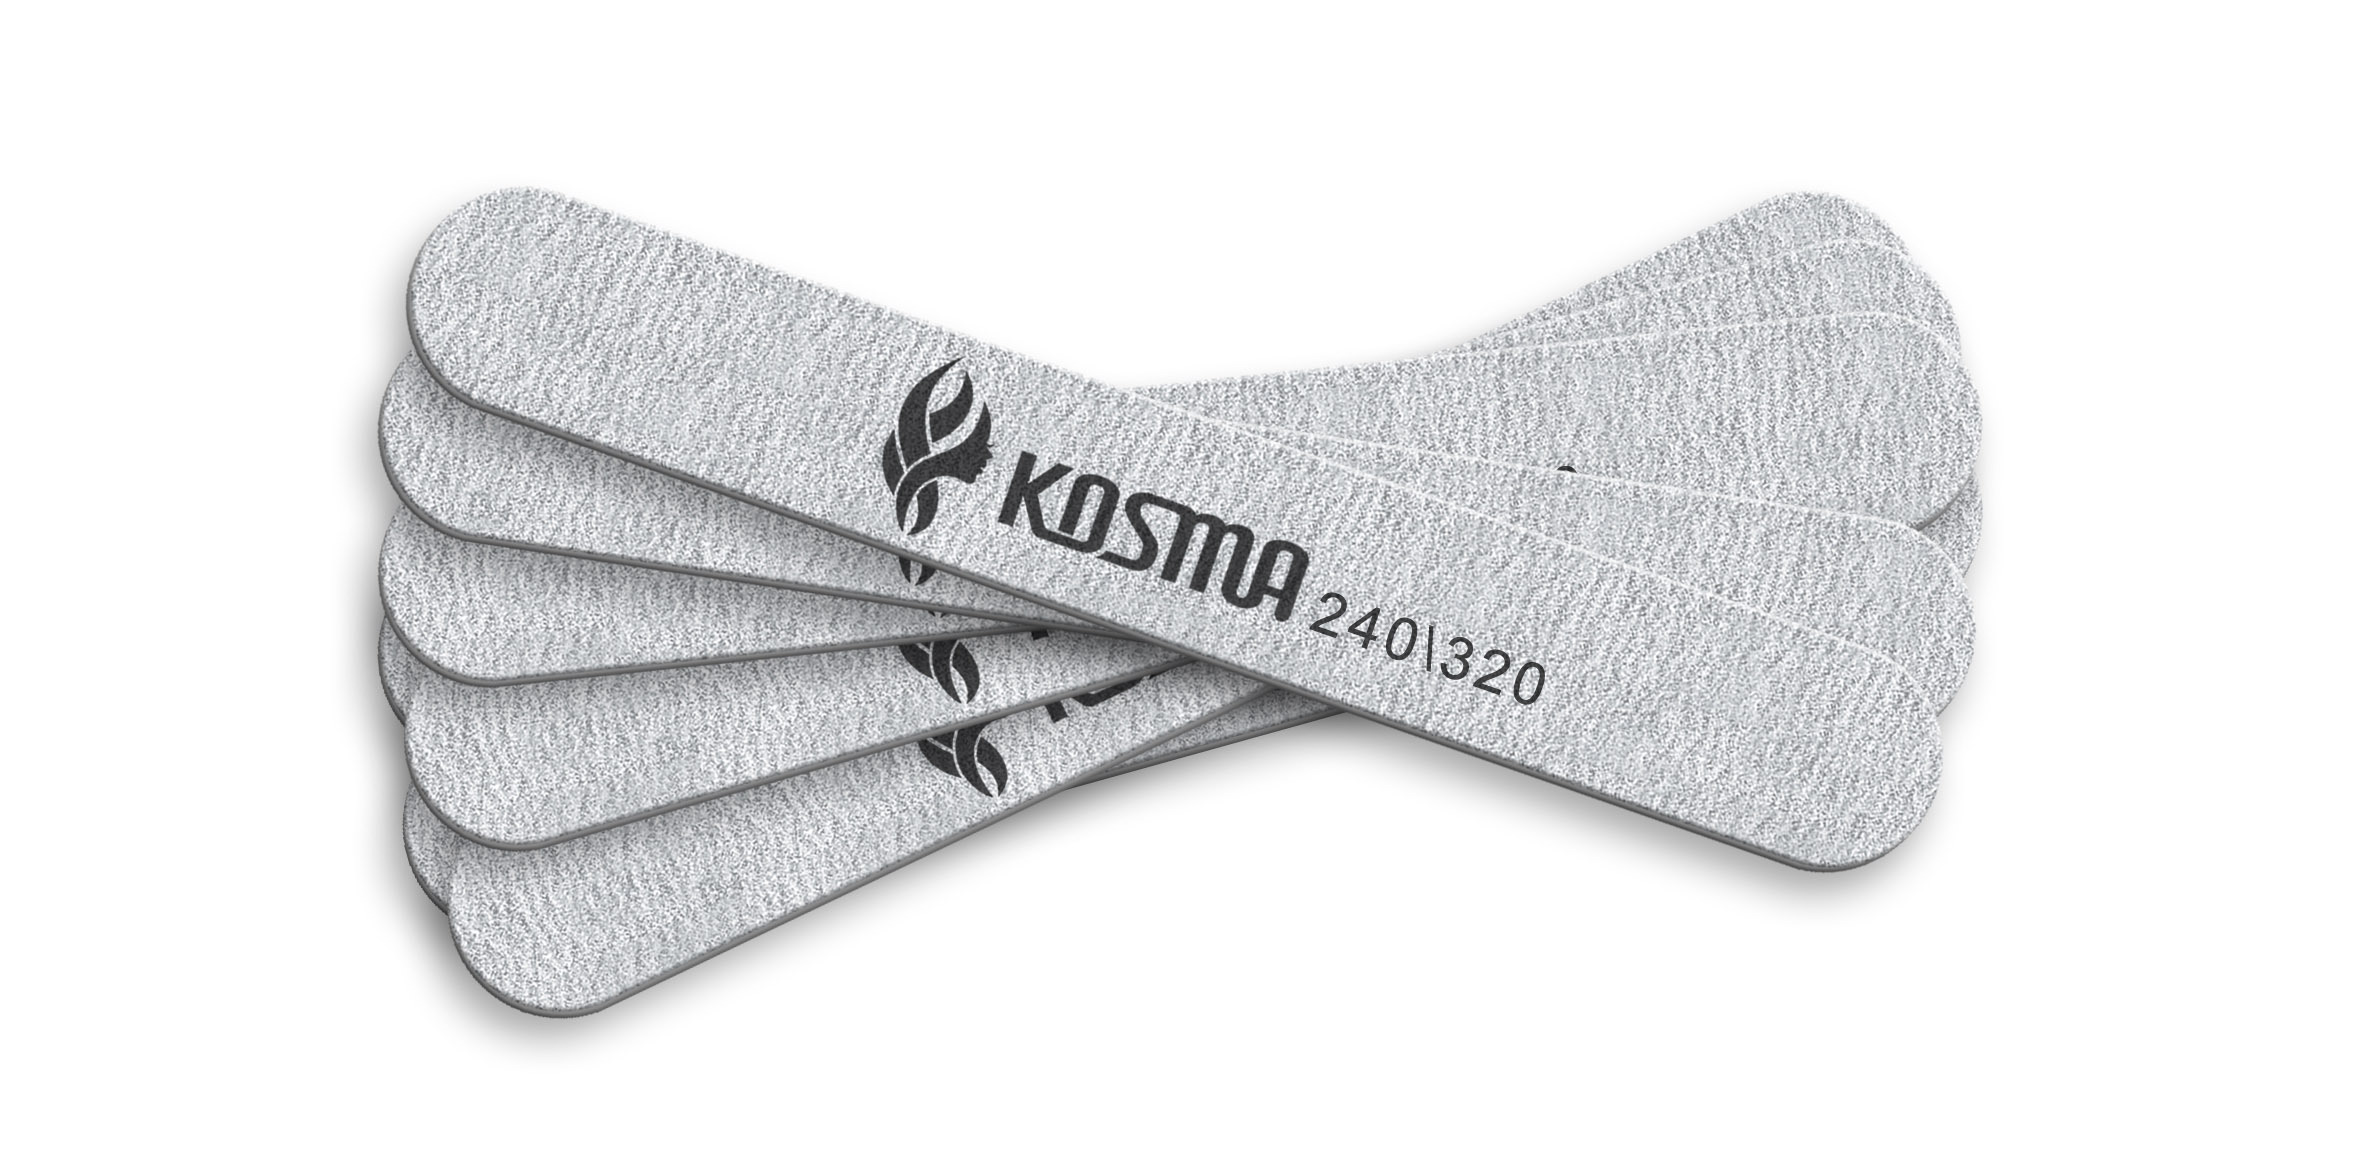 Набор пилка KOSMA прямая маленькая серая 240/320 пластиковая основа 50 шт.